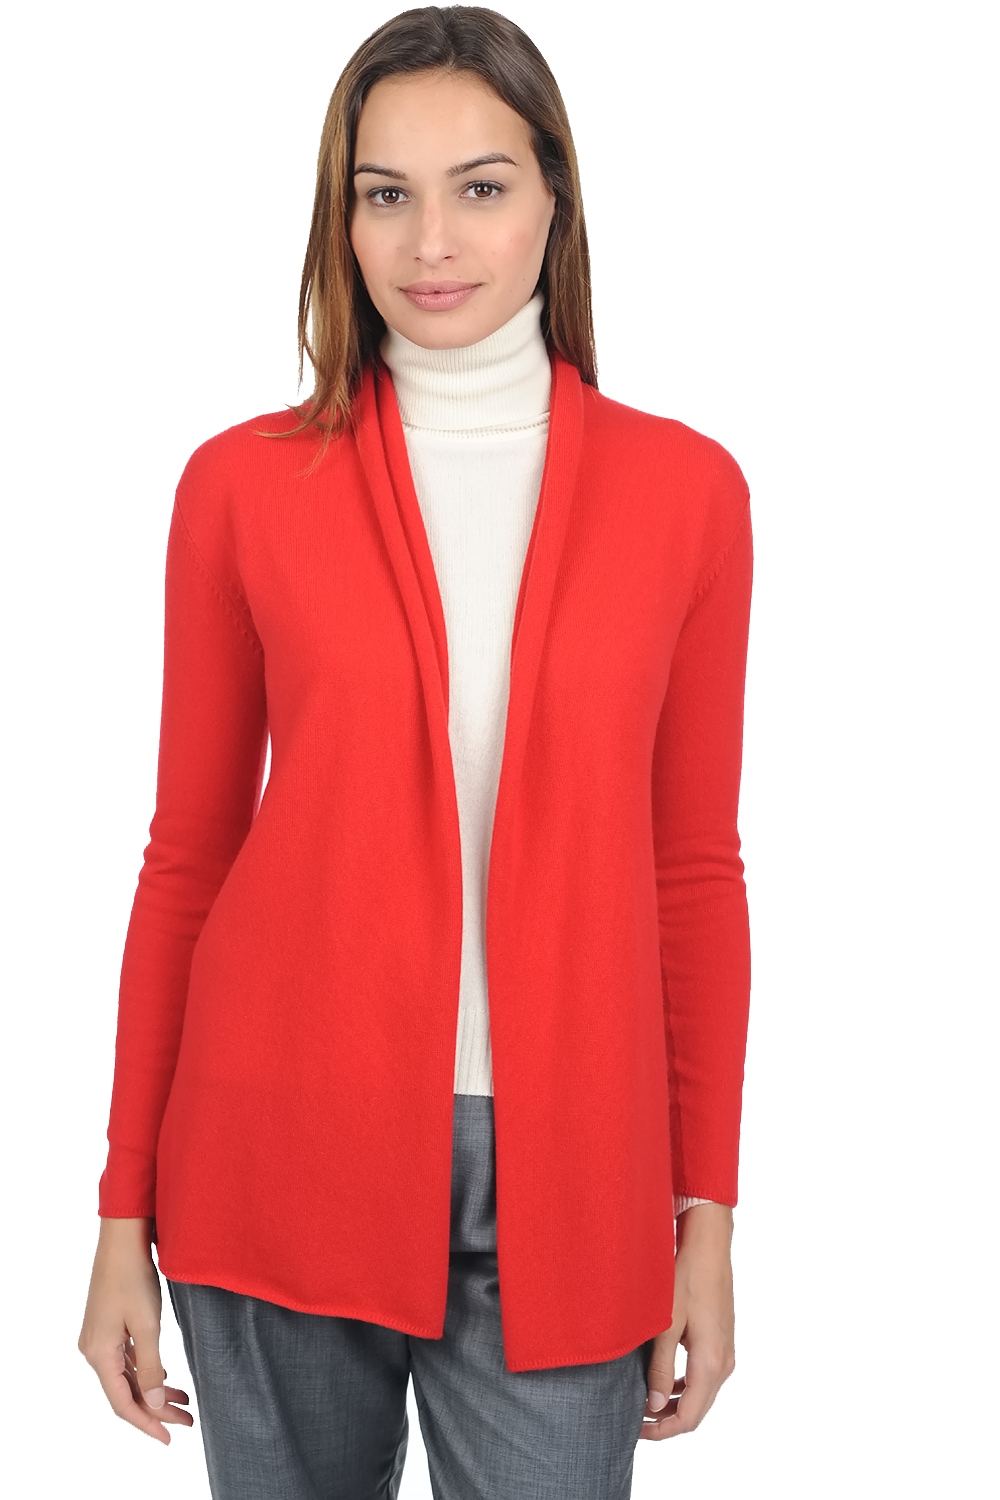 Cashmere ladies premium sweaters pucci premium tango red xs